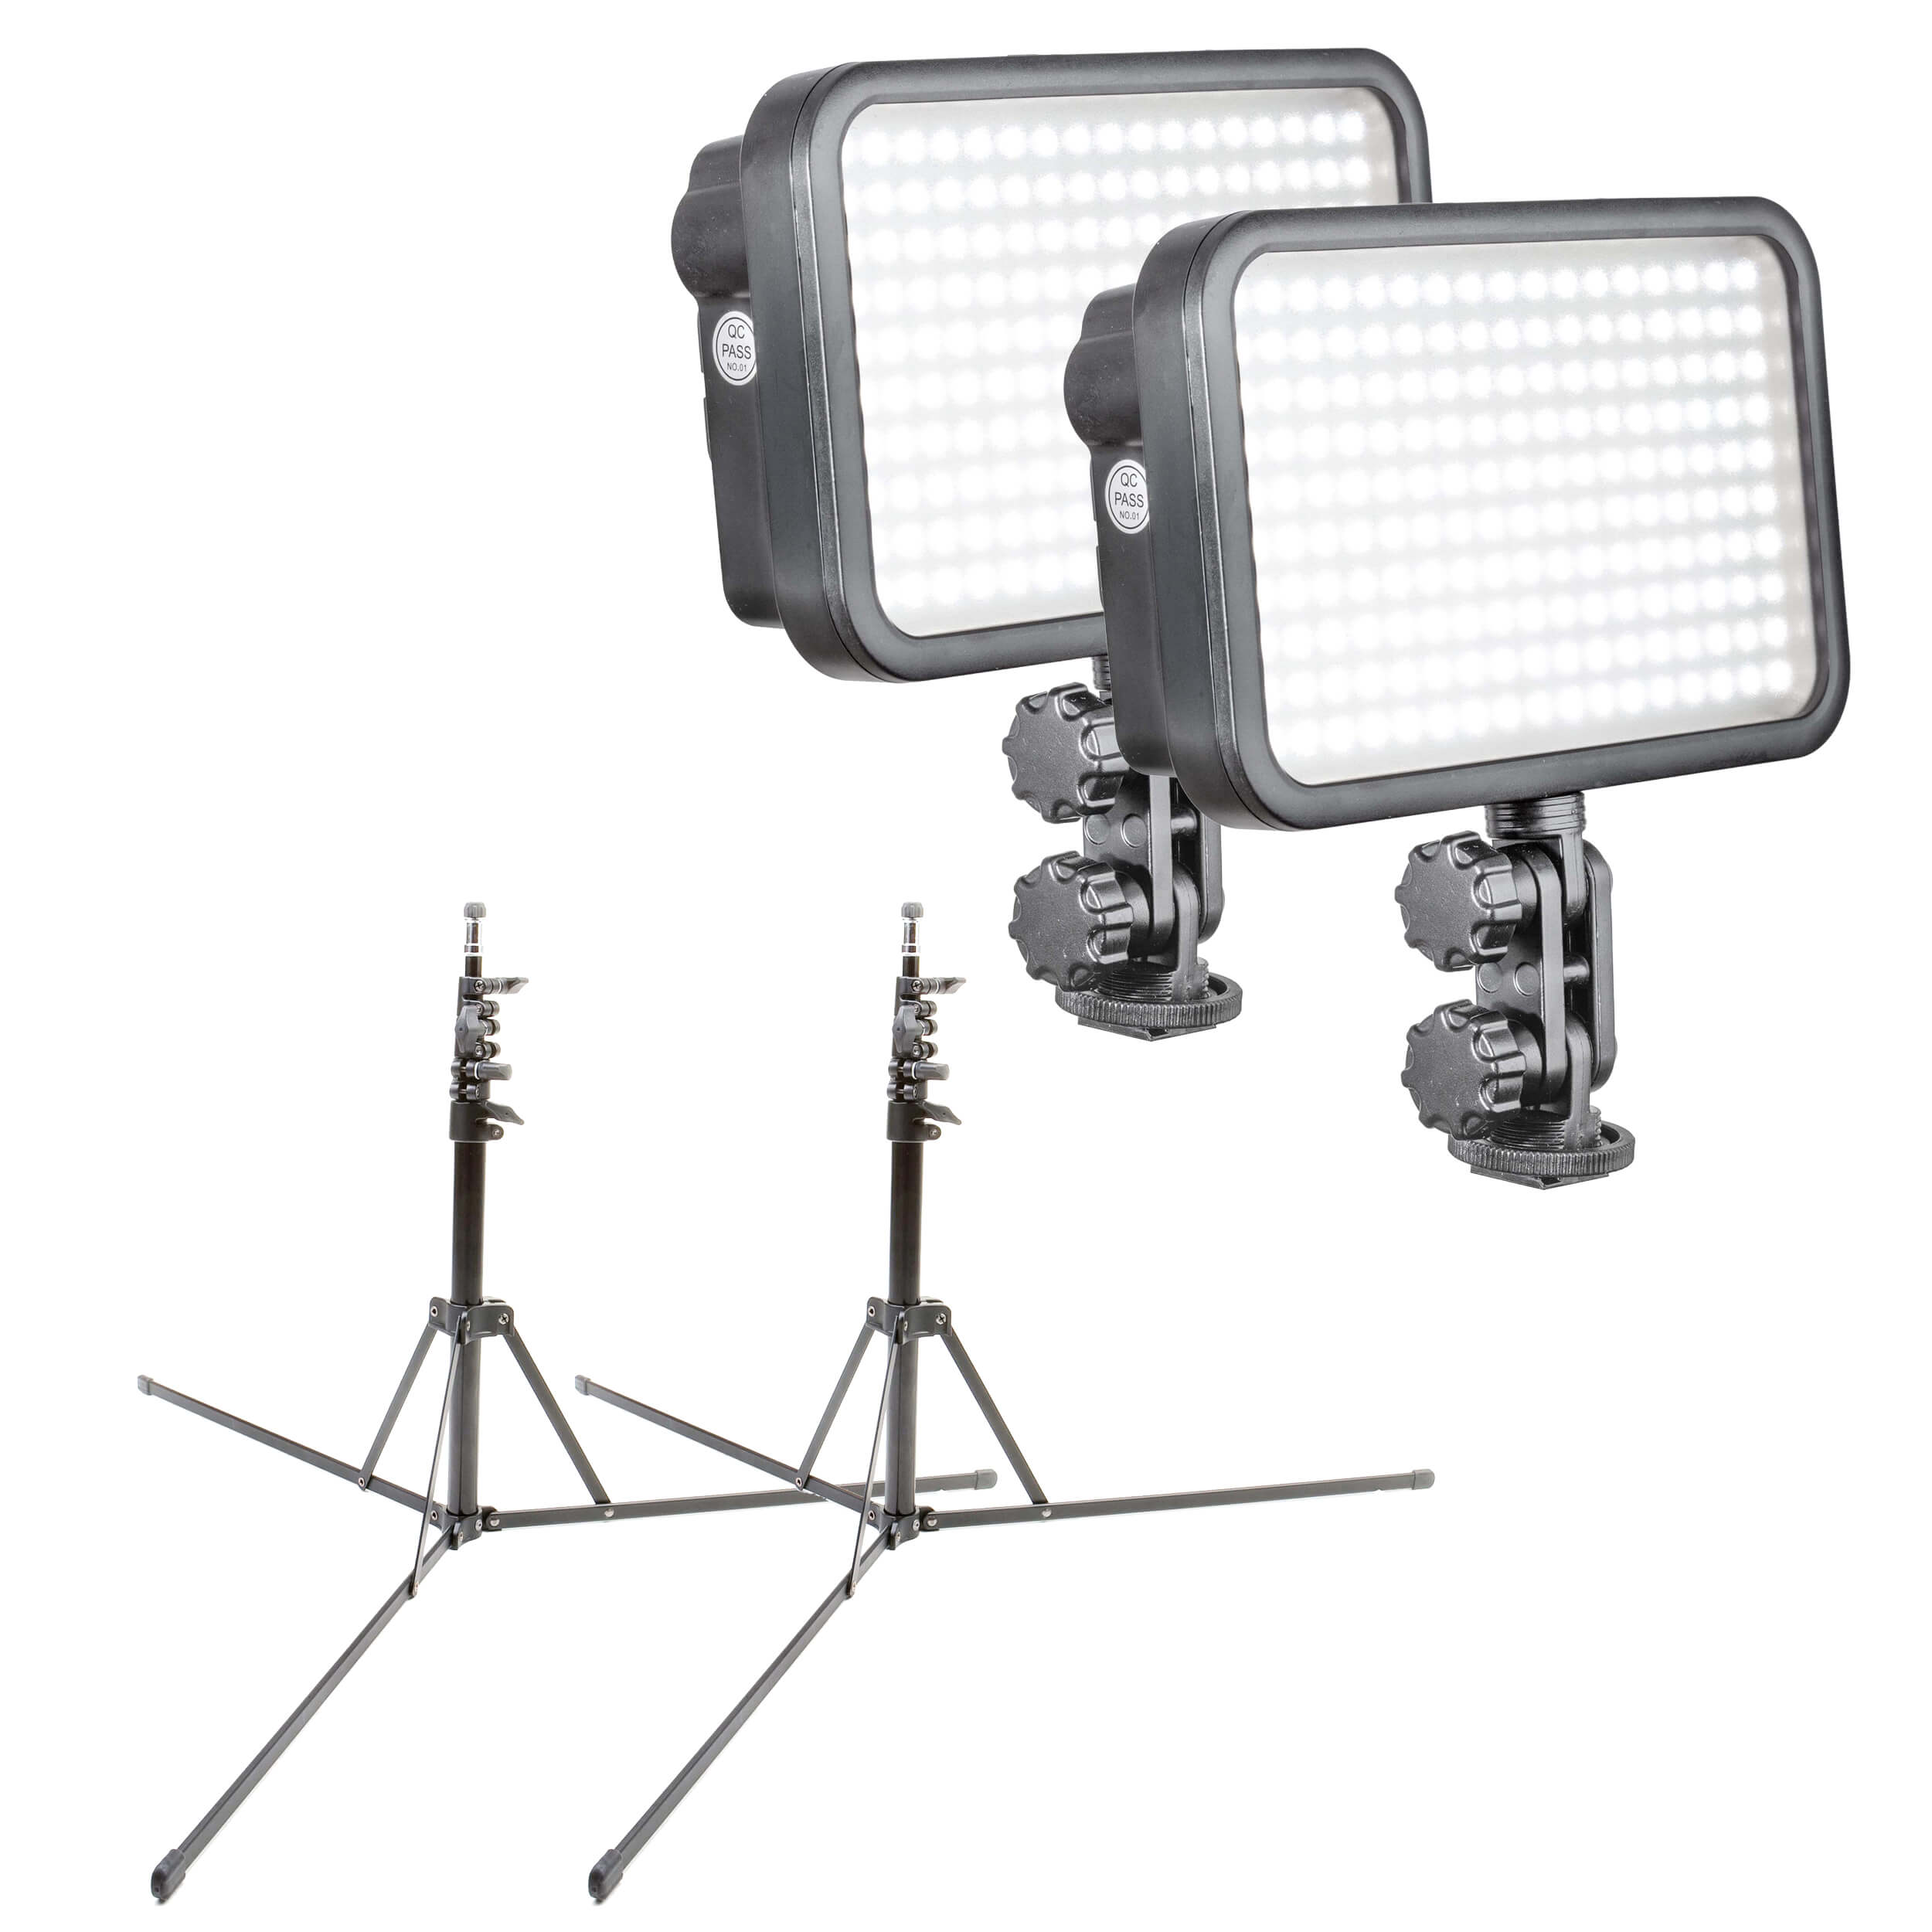 2 x LED170 Adjustable LED Camera Light Panel & Stands PixaPro 